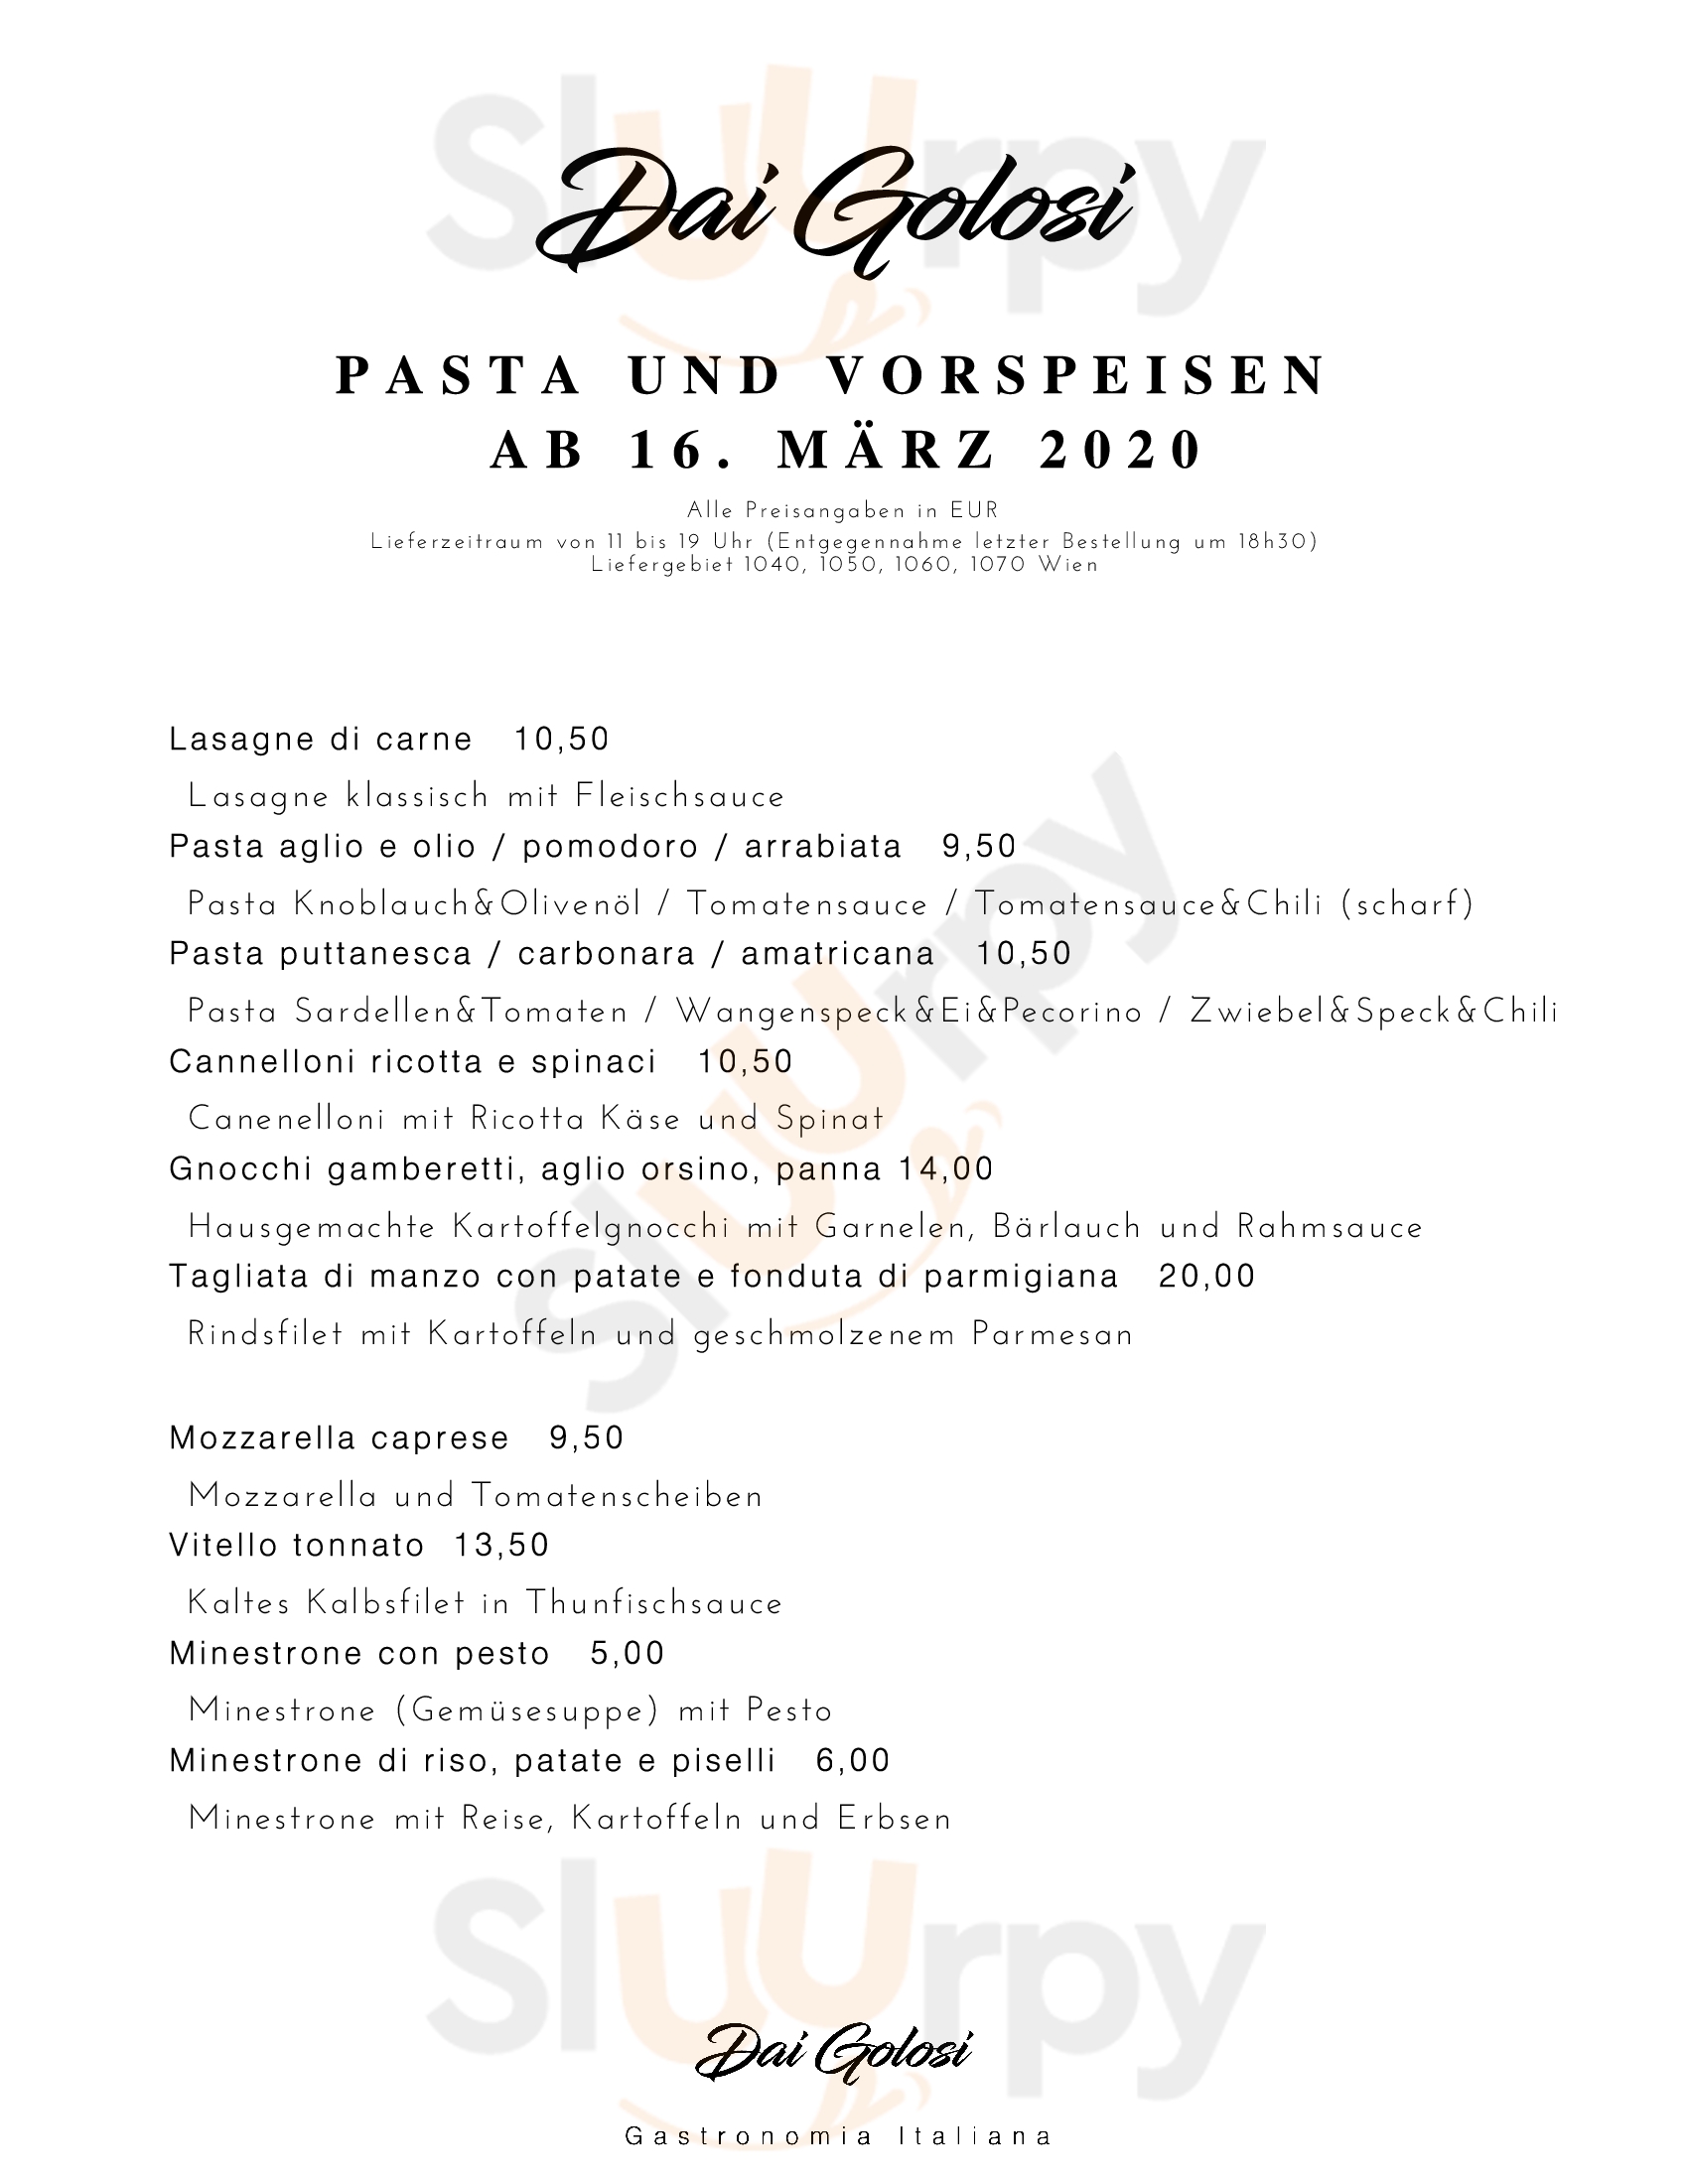 Dai Golosi - Gastronomia Italiana Wien Menu - 1